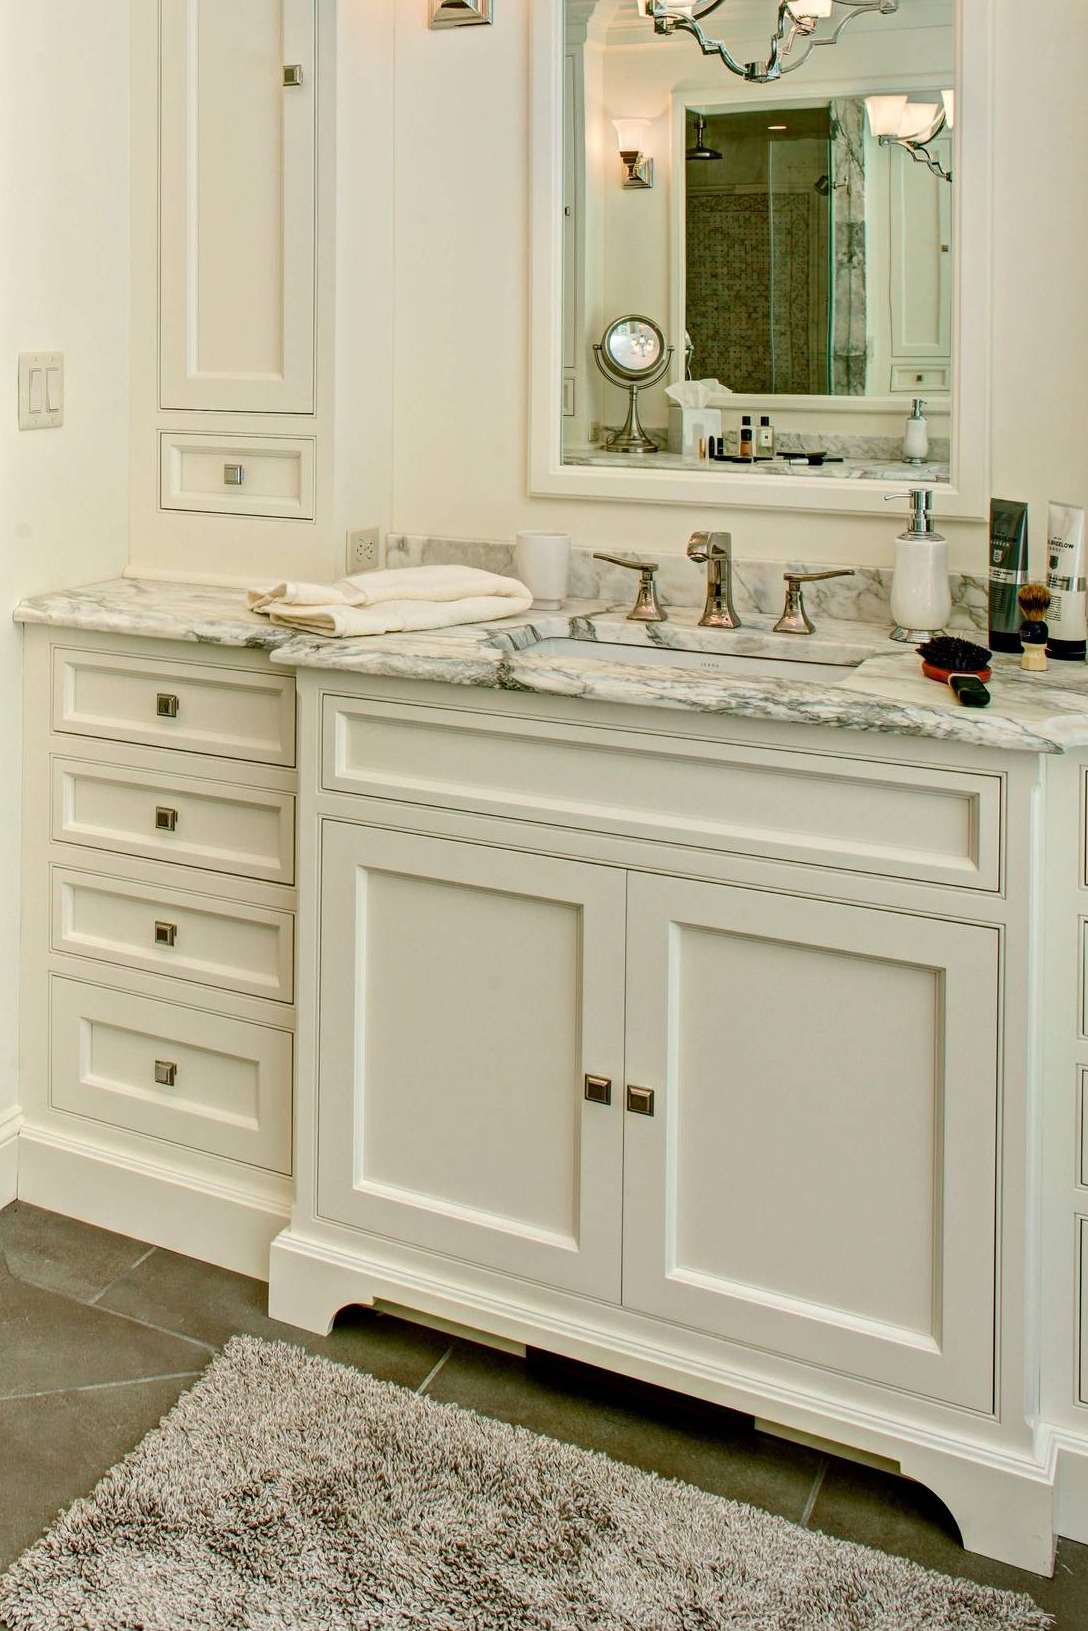 White Marble Countertop Cabinet Backsplash Dark Gray Porcelain Floor Tile